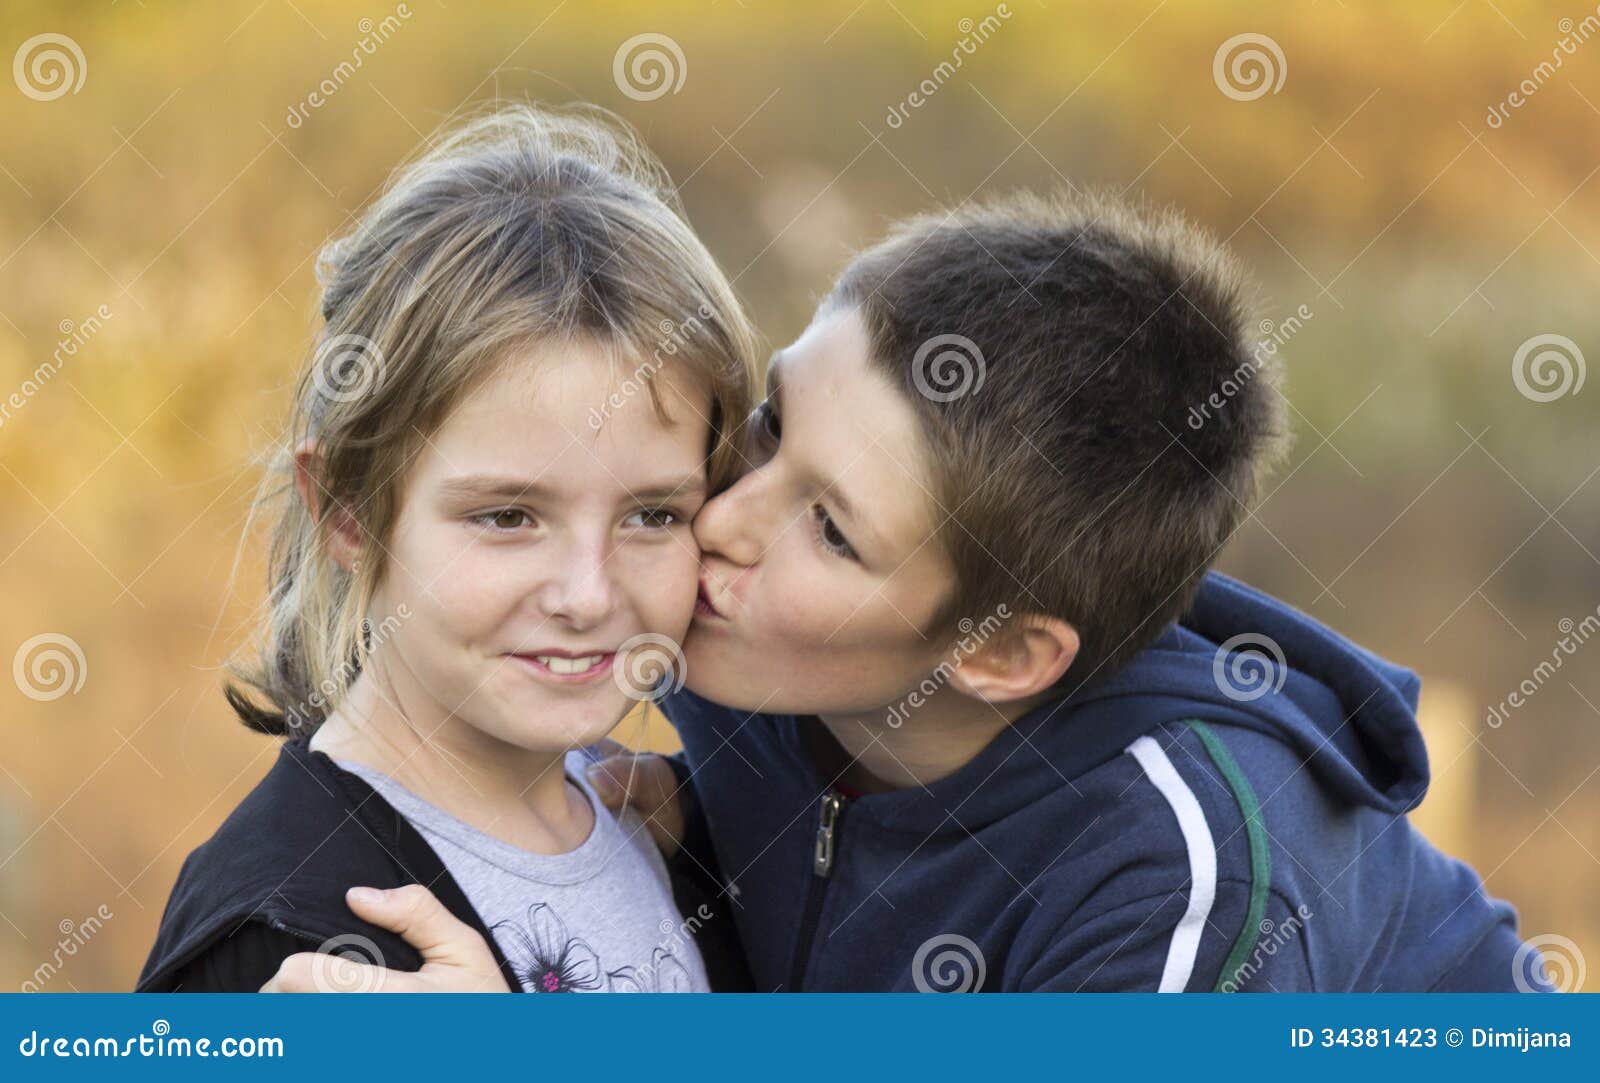 Мальчик целует девочку в школе